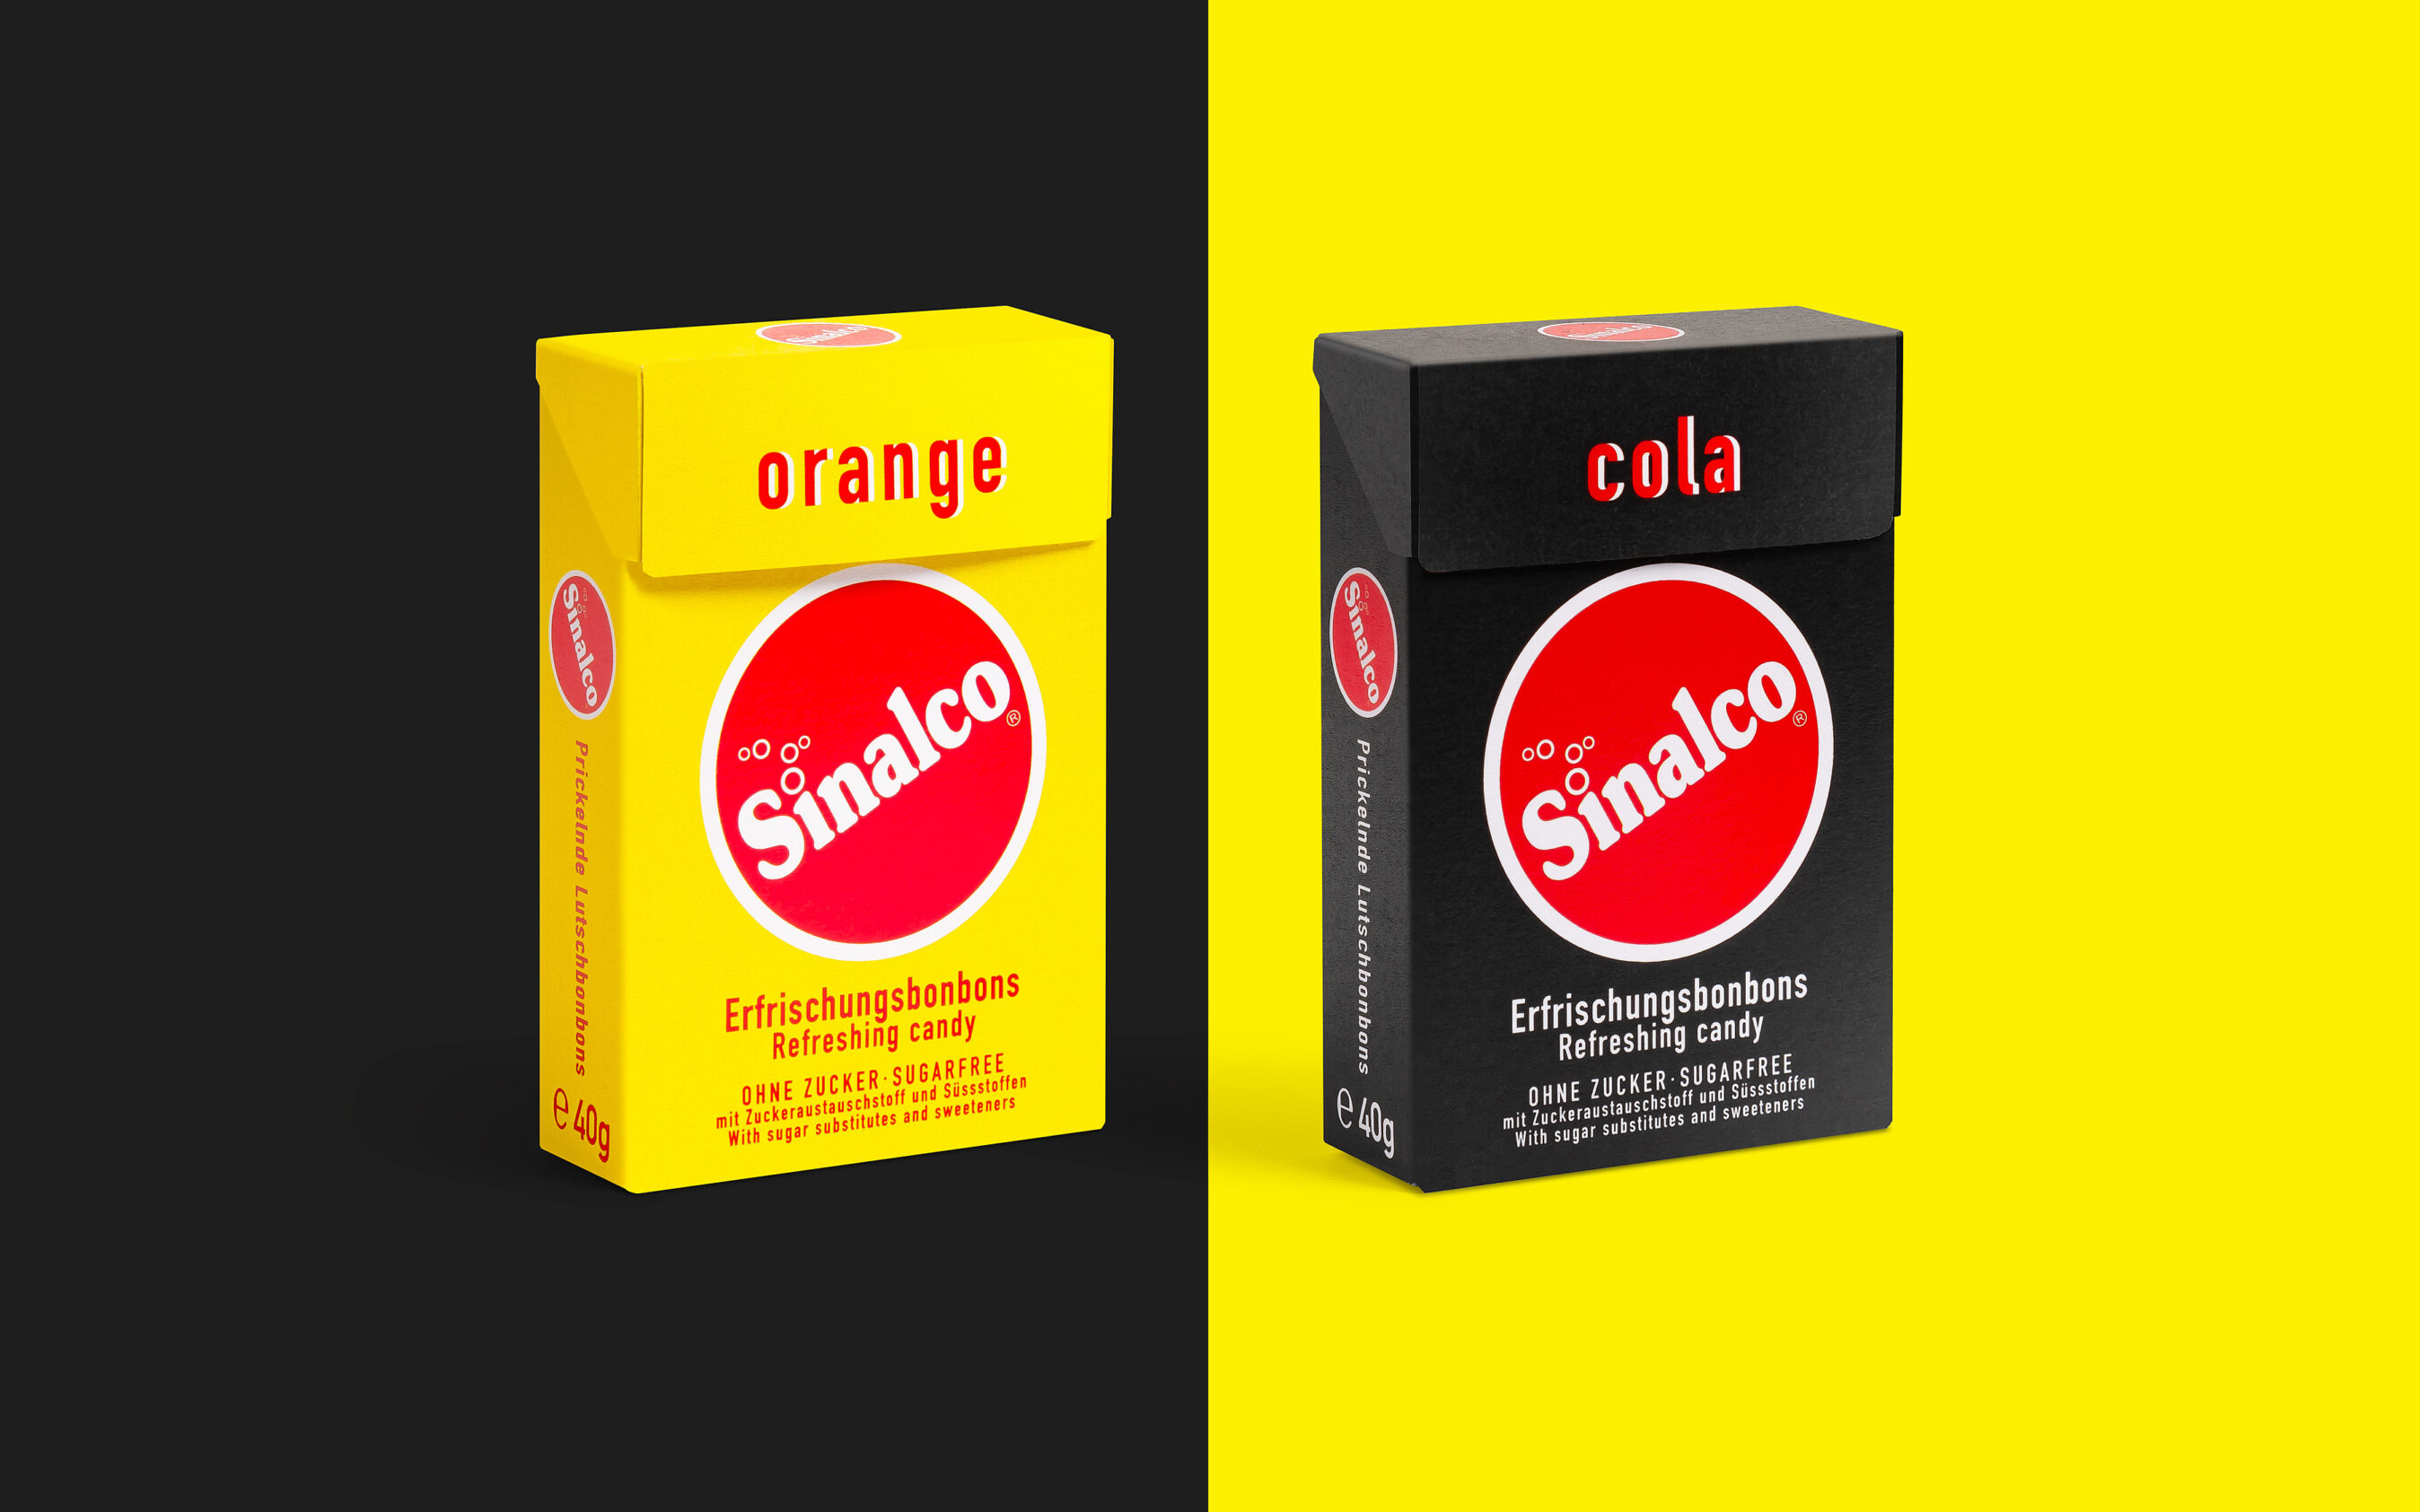 Verpackungsgestaltung oder auch Package Design genannt für Sinalco Erfrischungsbonbons. Minimalistisches Grafik Design für maximale Wirkung des Brands.